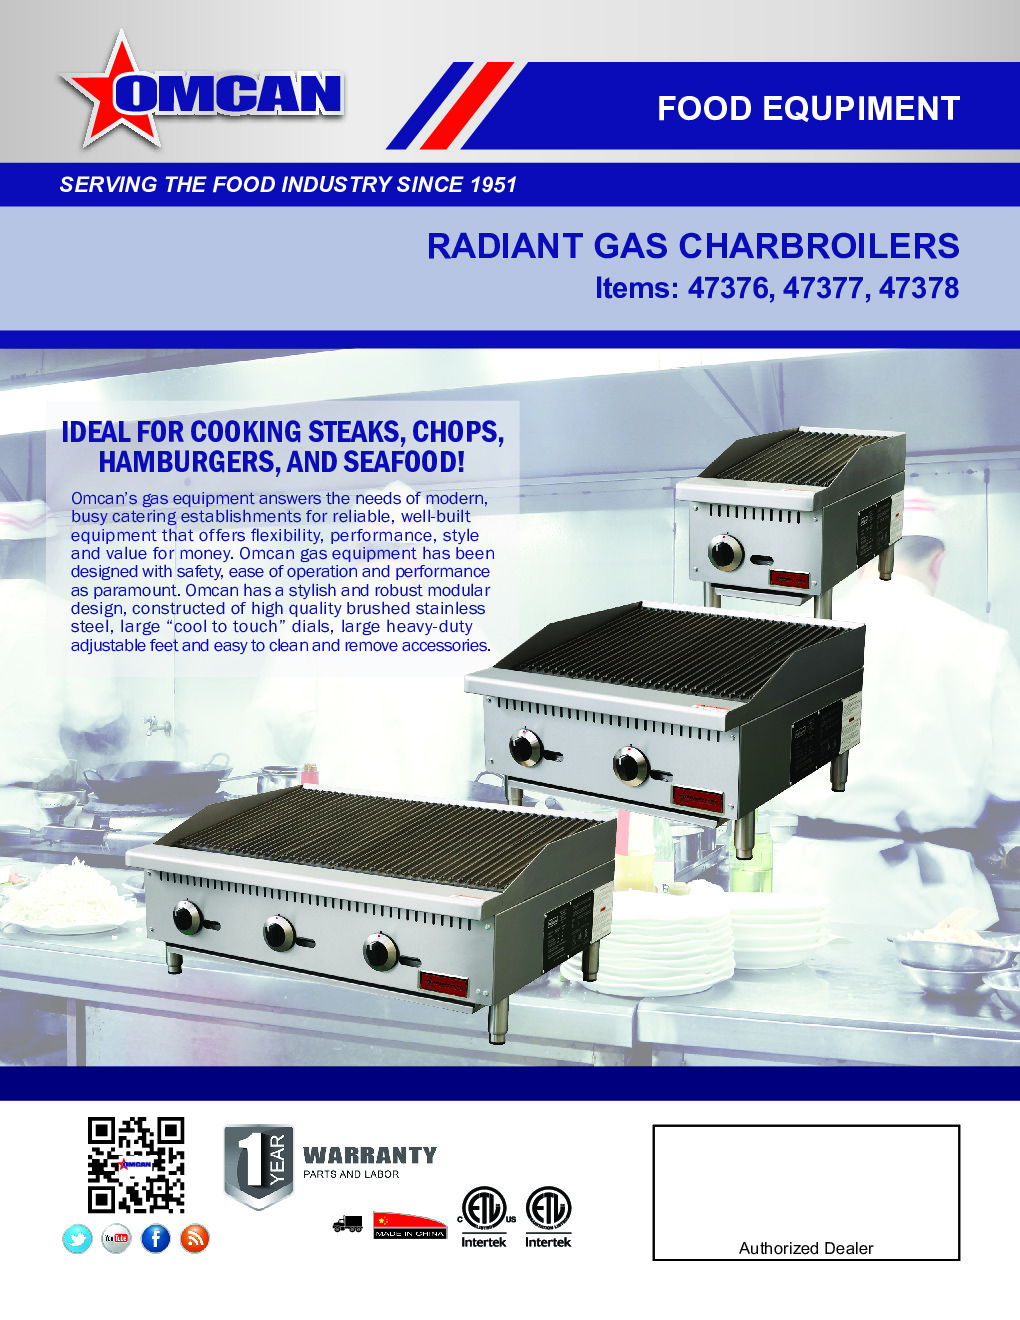 Omcan USA 47378 Countertop Gas Charbroiler